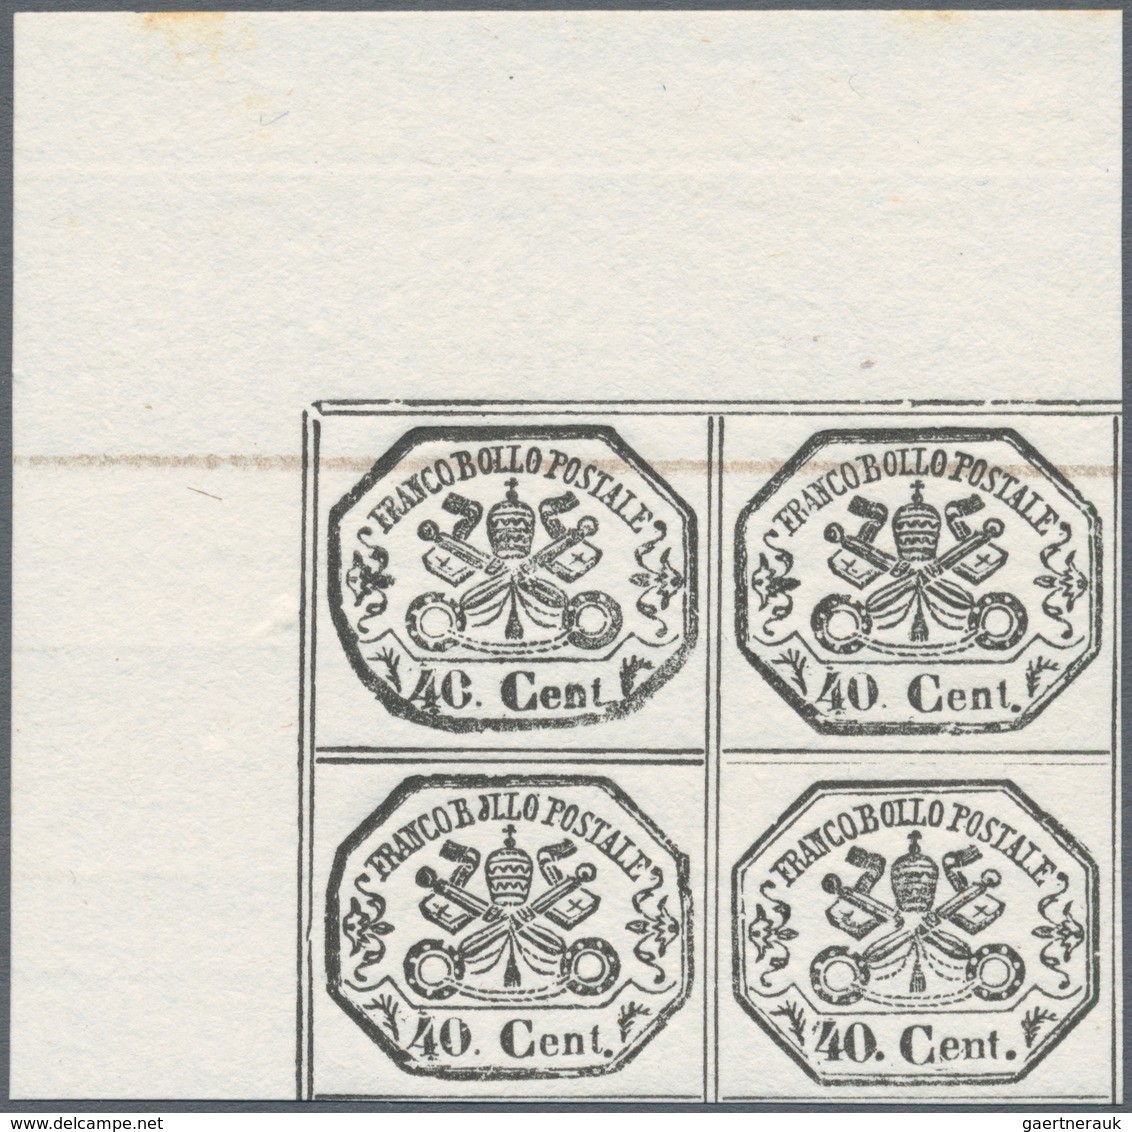 Italien - Altitalienische Staaten: Kirchenstaat: 1889: reprints of MOENS on white paper, two series